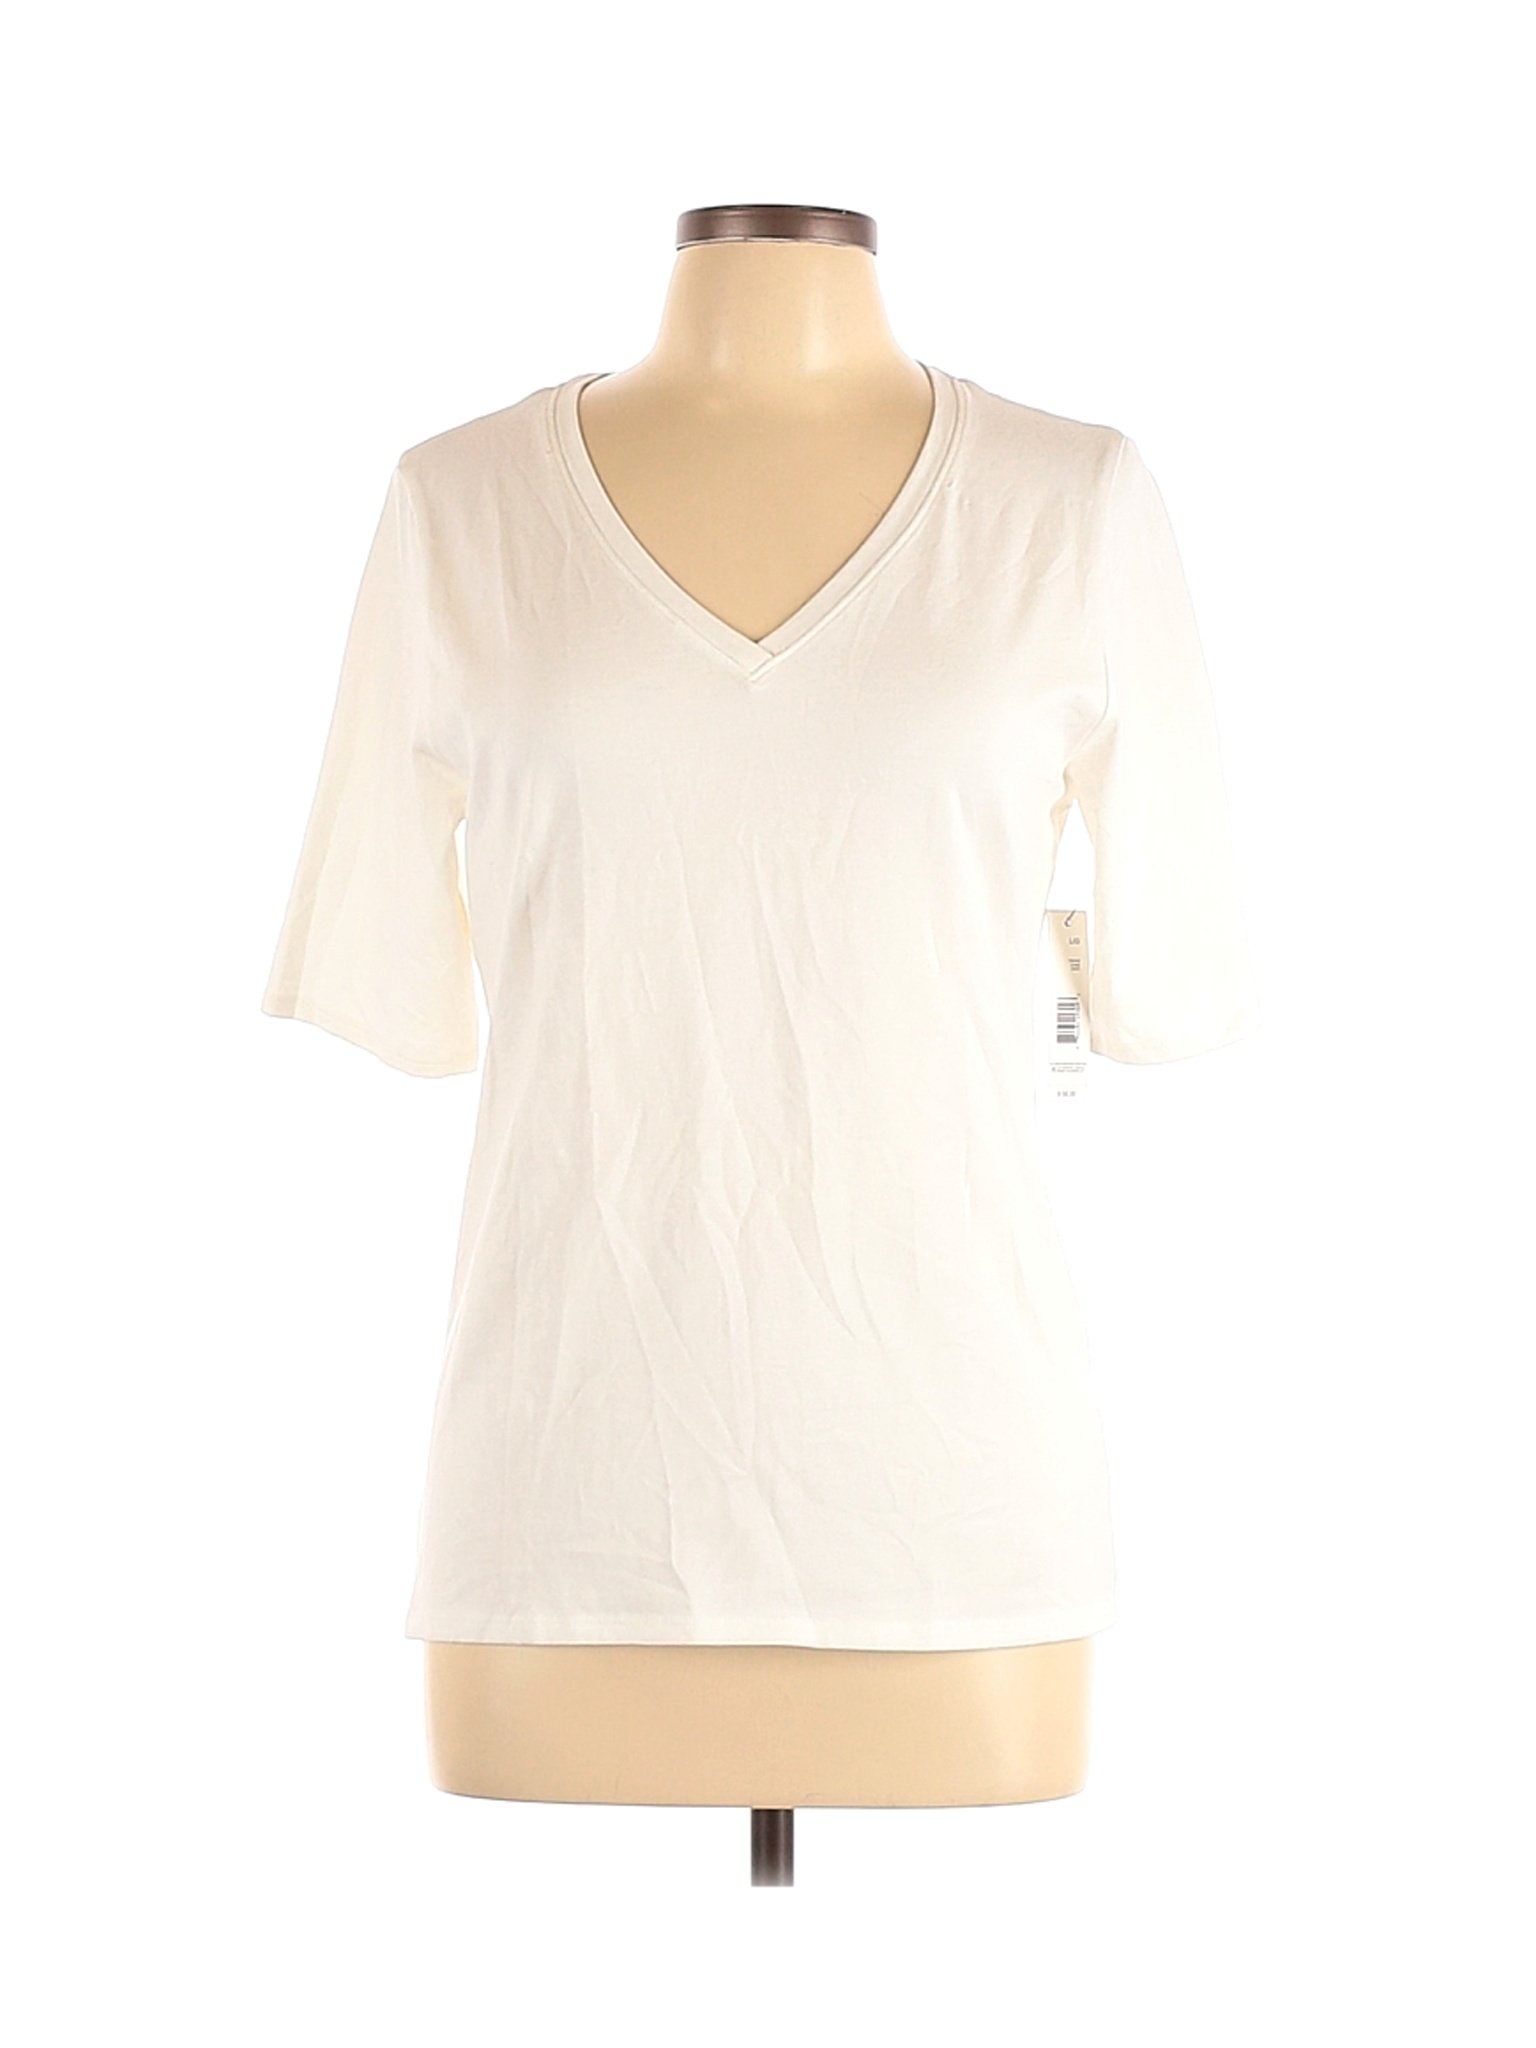 Tahari Women Ivory Short Sleeve T-Shirt L | eBay